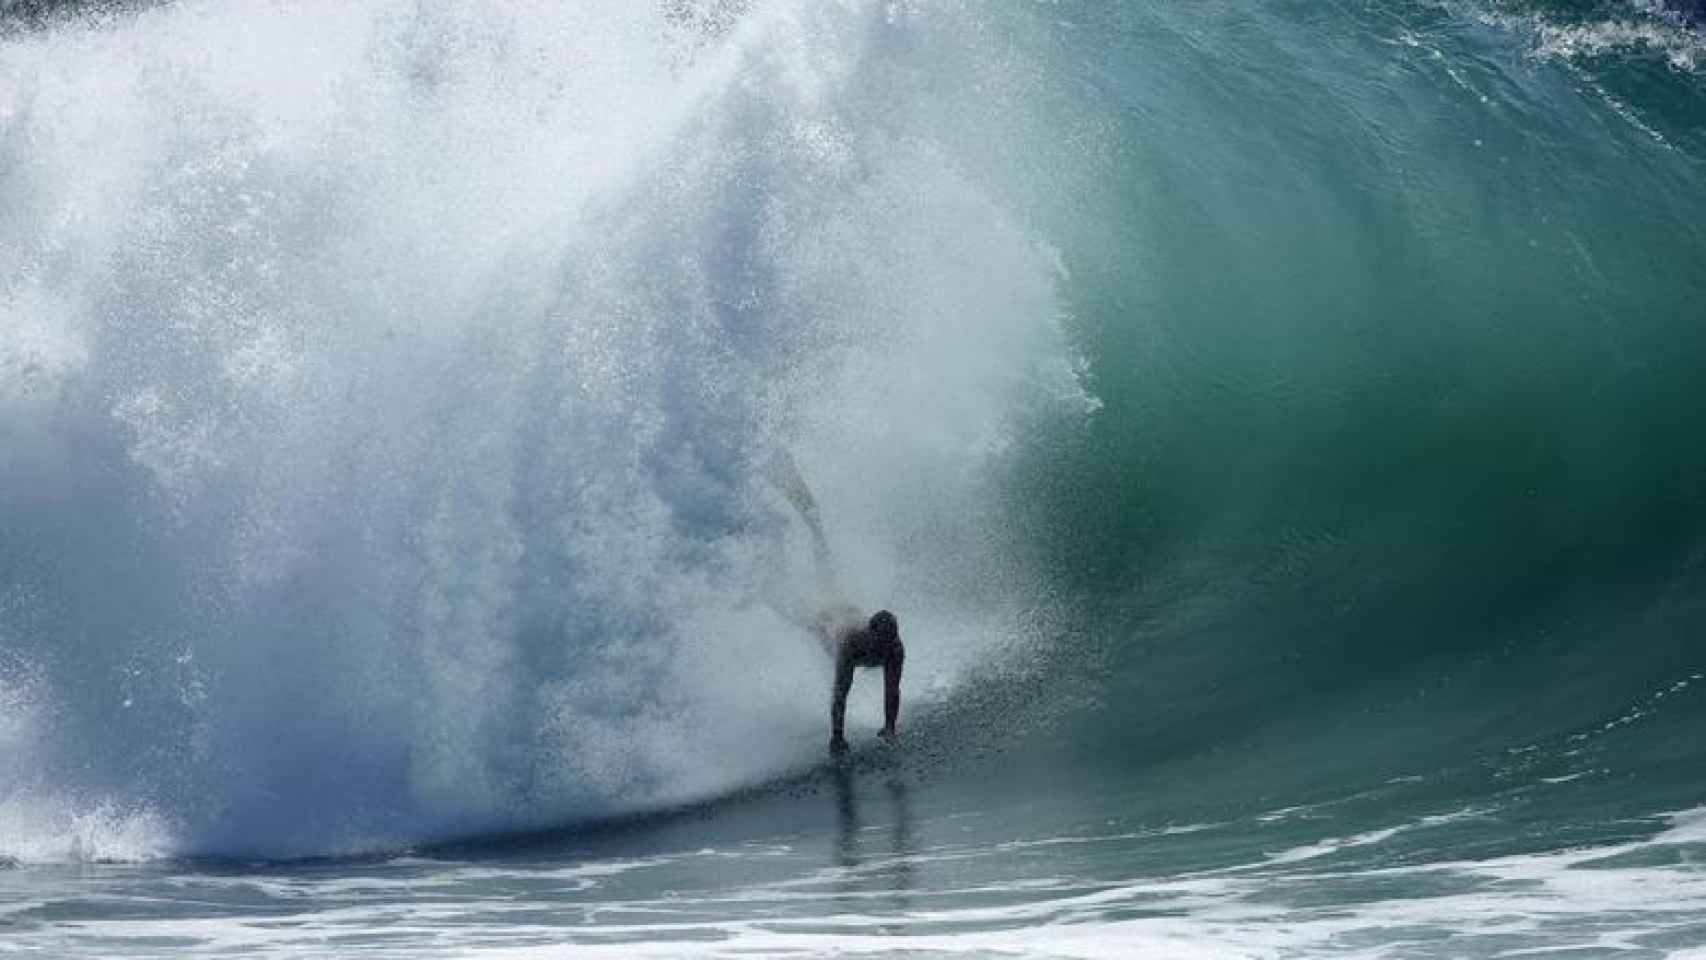 Imagen de surf (el surfista no tiene nada que ver con la noticia)